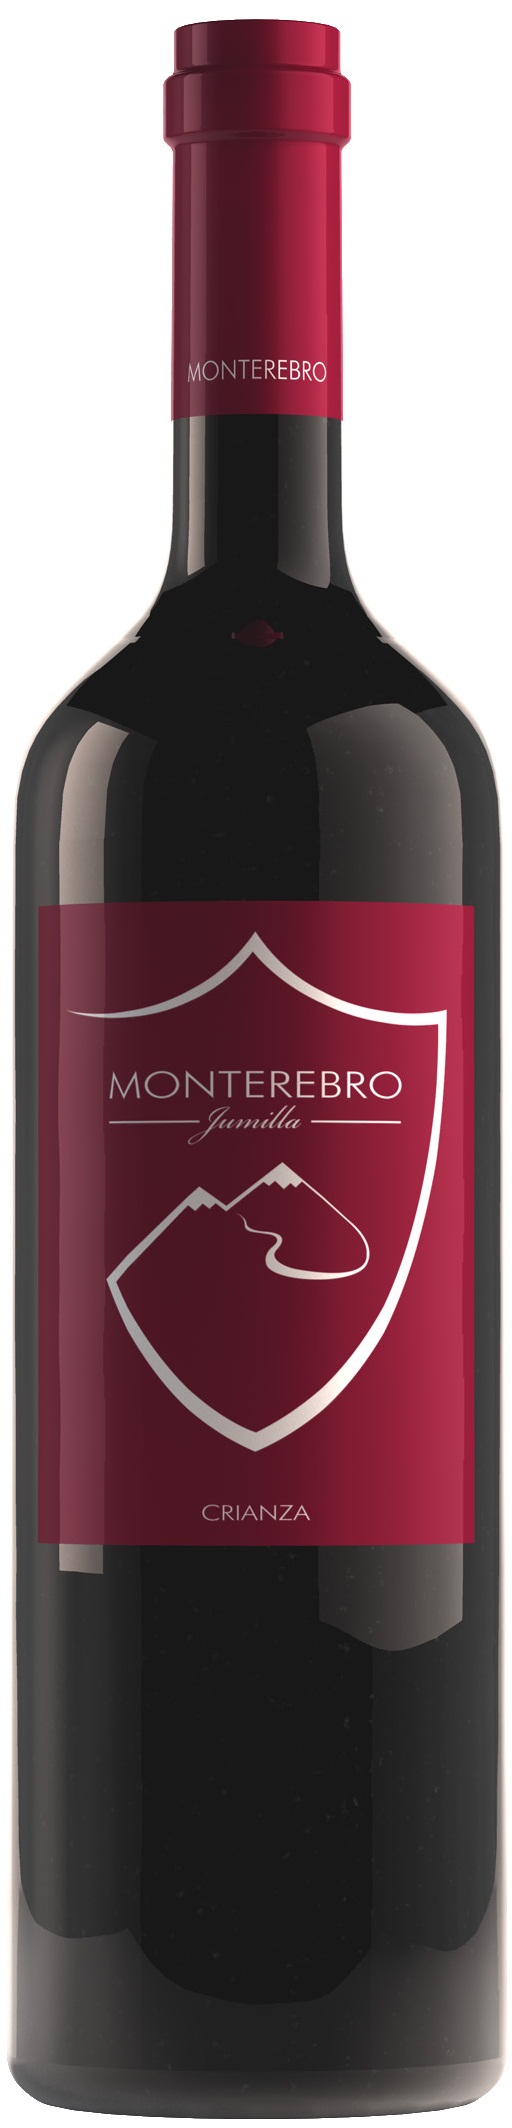 Logo del vino Monterebro Crianza